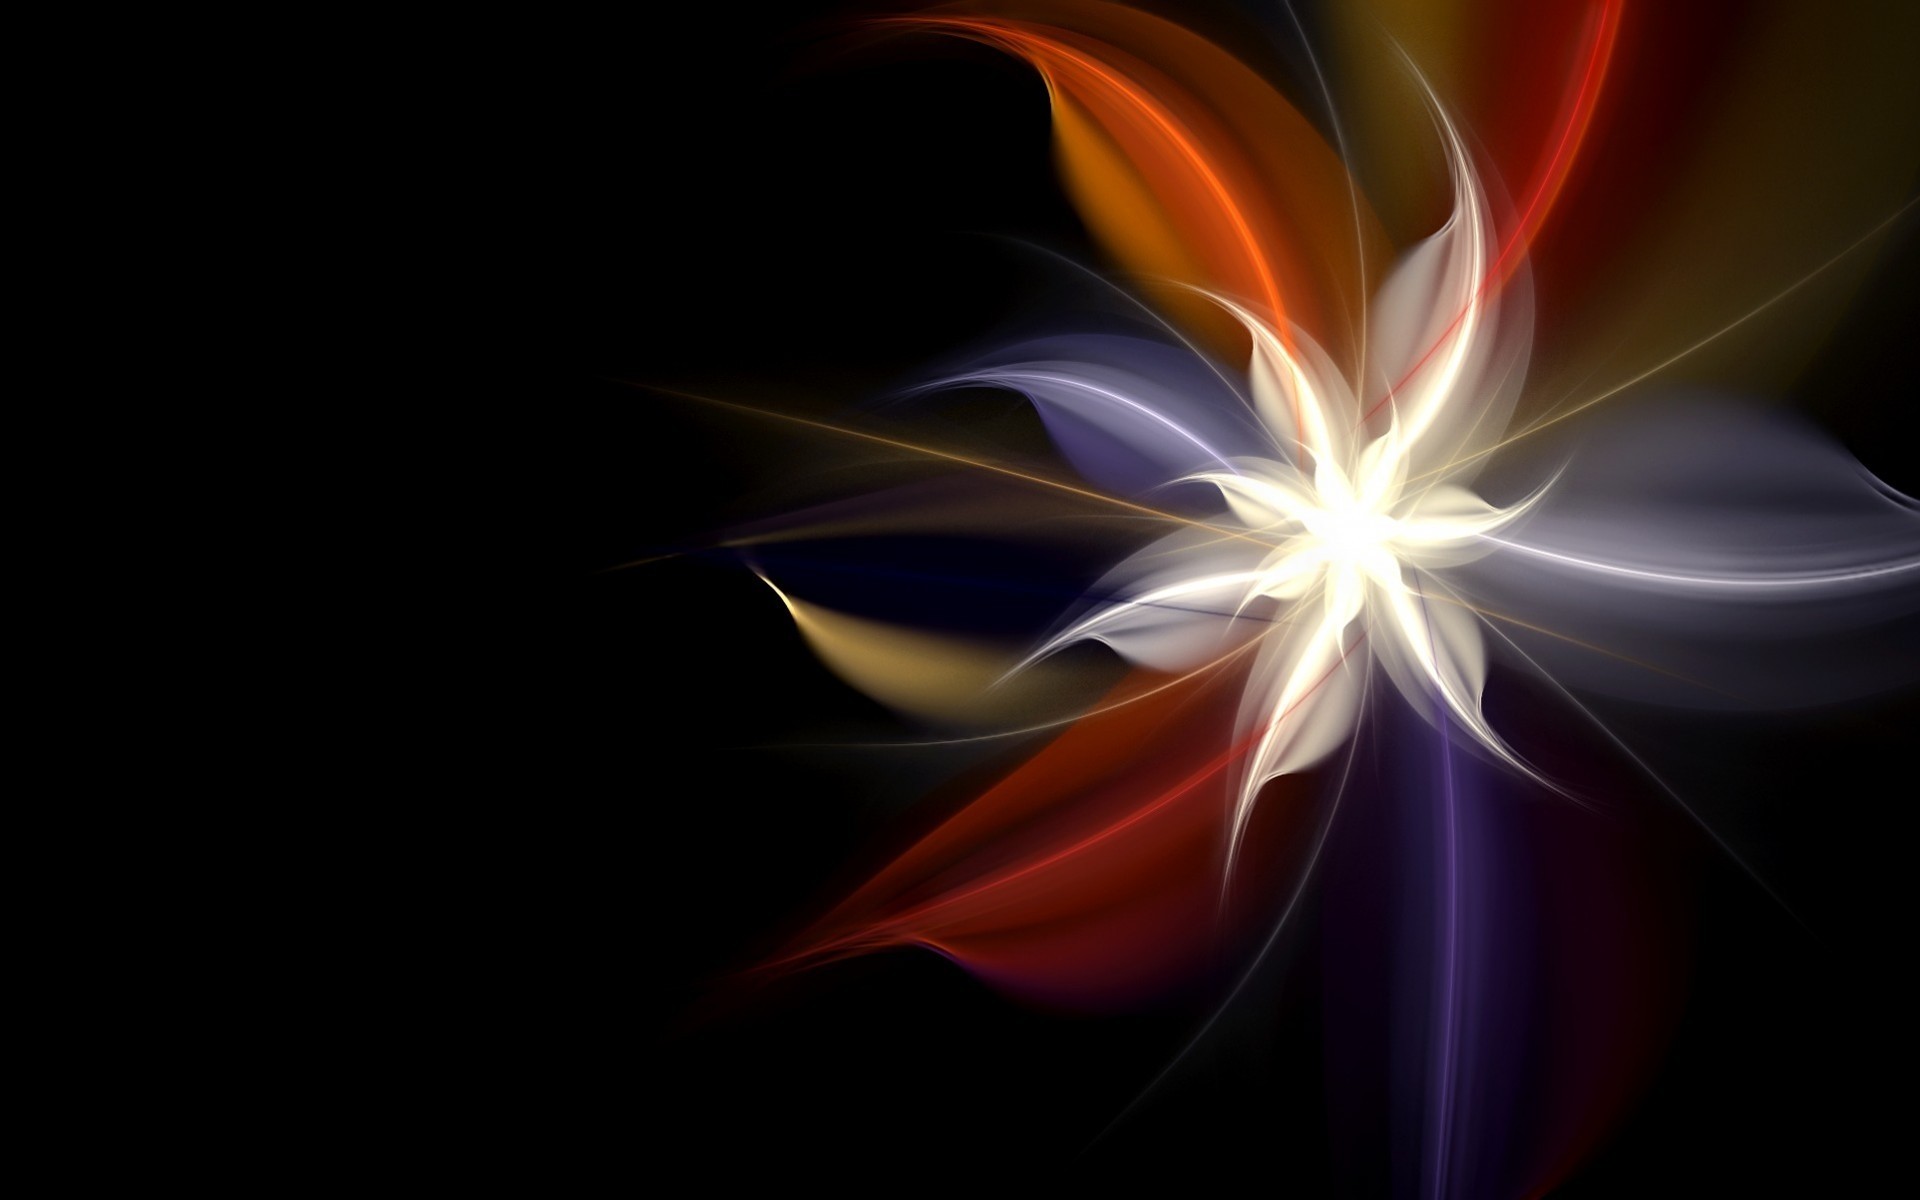 неоновые аннотация пламя искусство график иллюстрация дизайн фрактал цвет кривая сюрреалистично энергии динамические фантазия свет яркий хорошо фантастический волна украшения